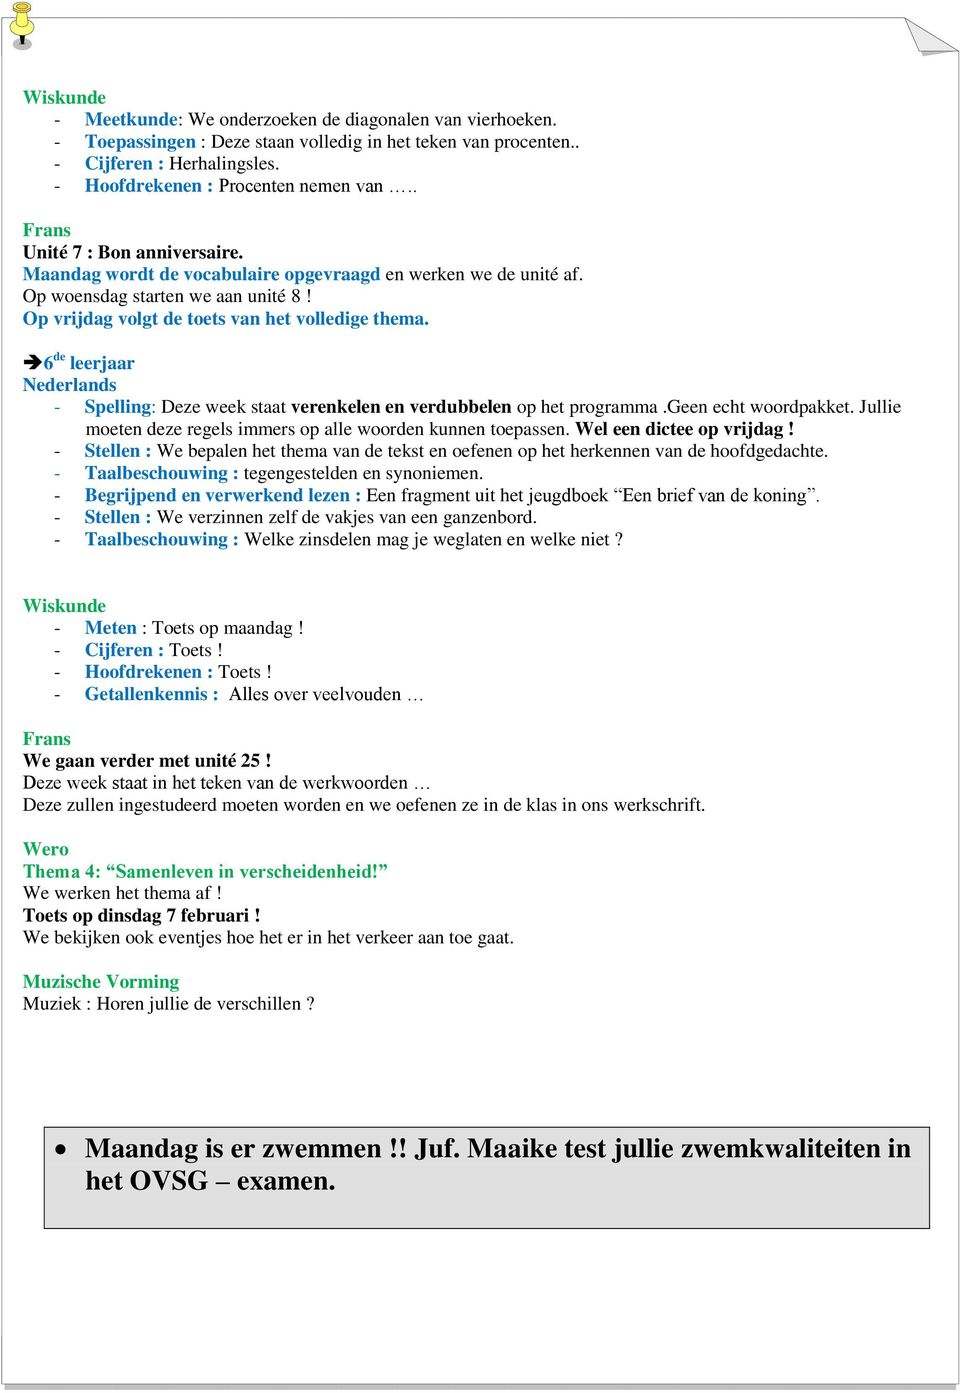 6 de leerjaar Nederlands - Spelling: Deze week staat verenkelen en verdubbelen op het programma.geen echt woordpakket. Jullie moeten deze regels immers op alle woorden kunnen toepassen.